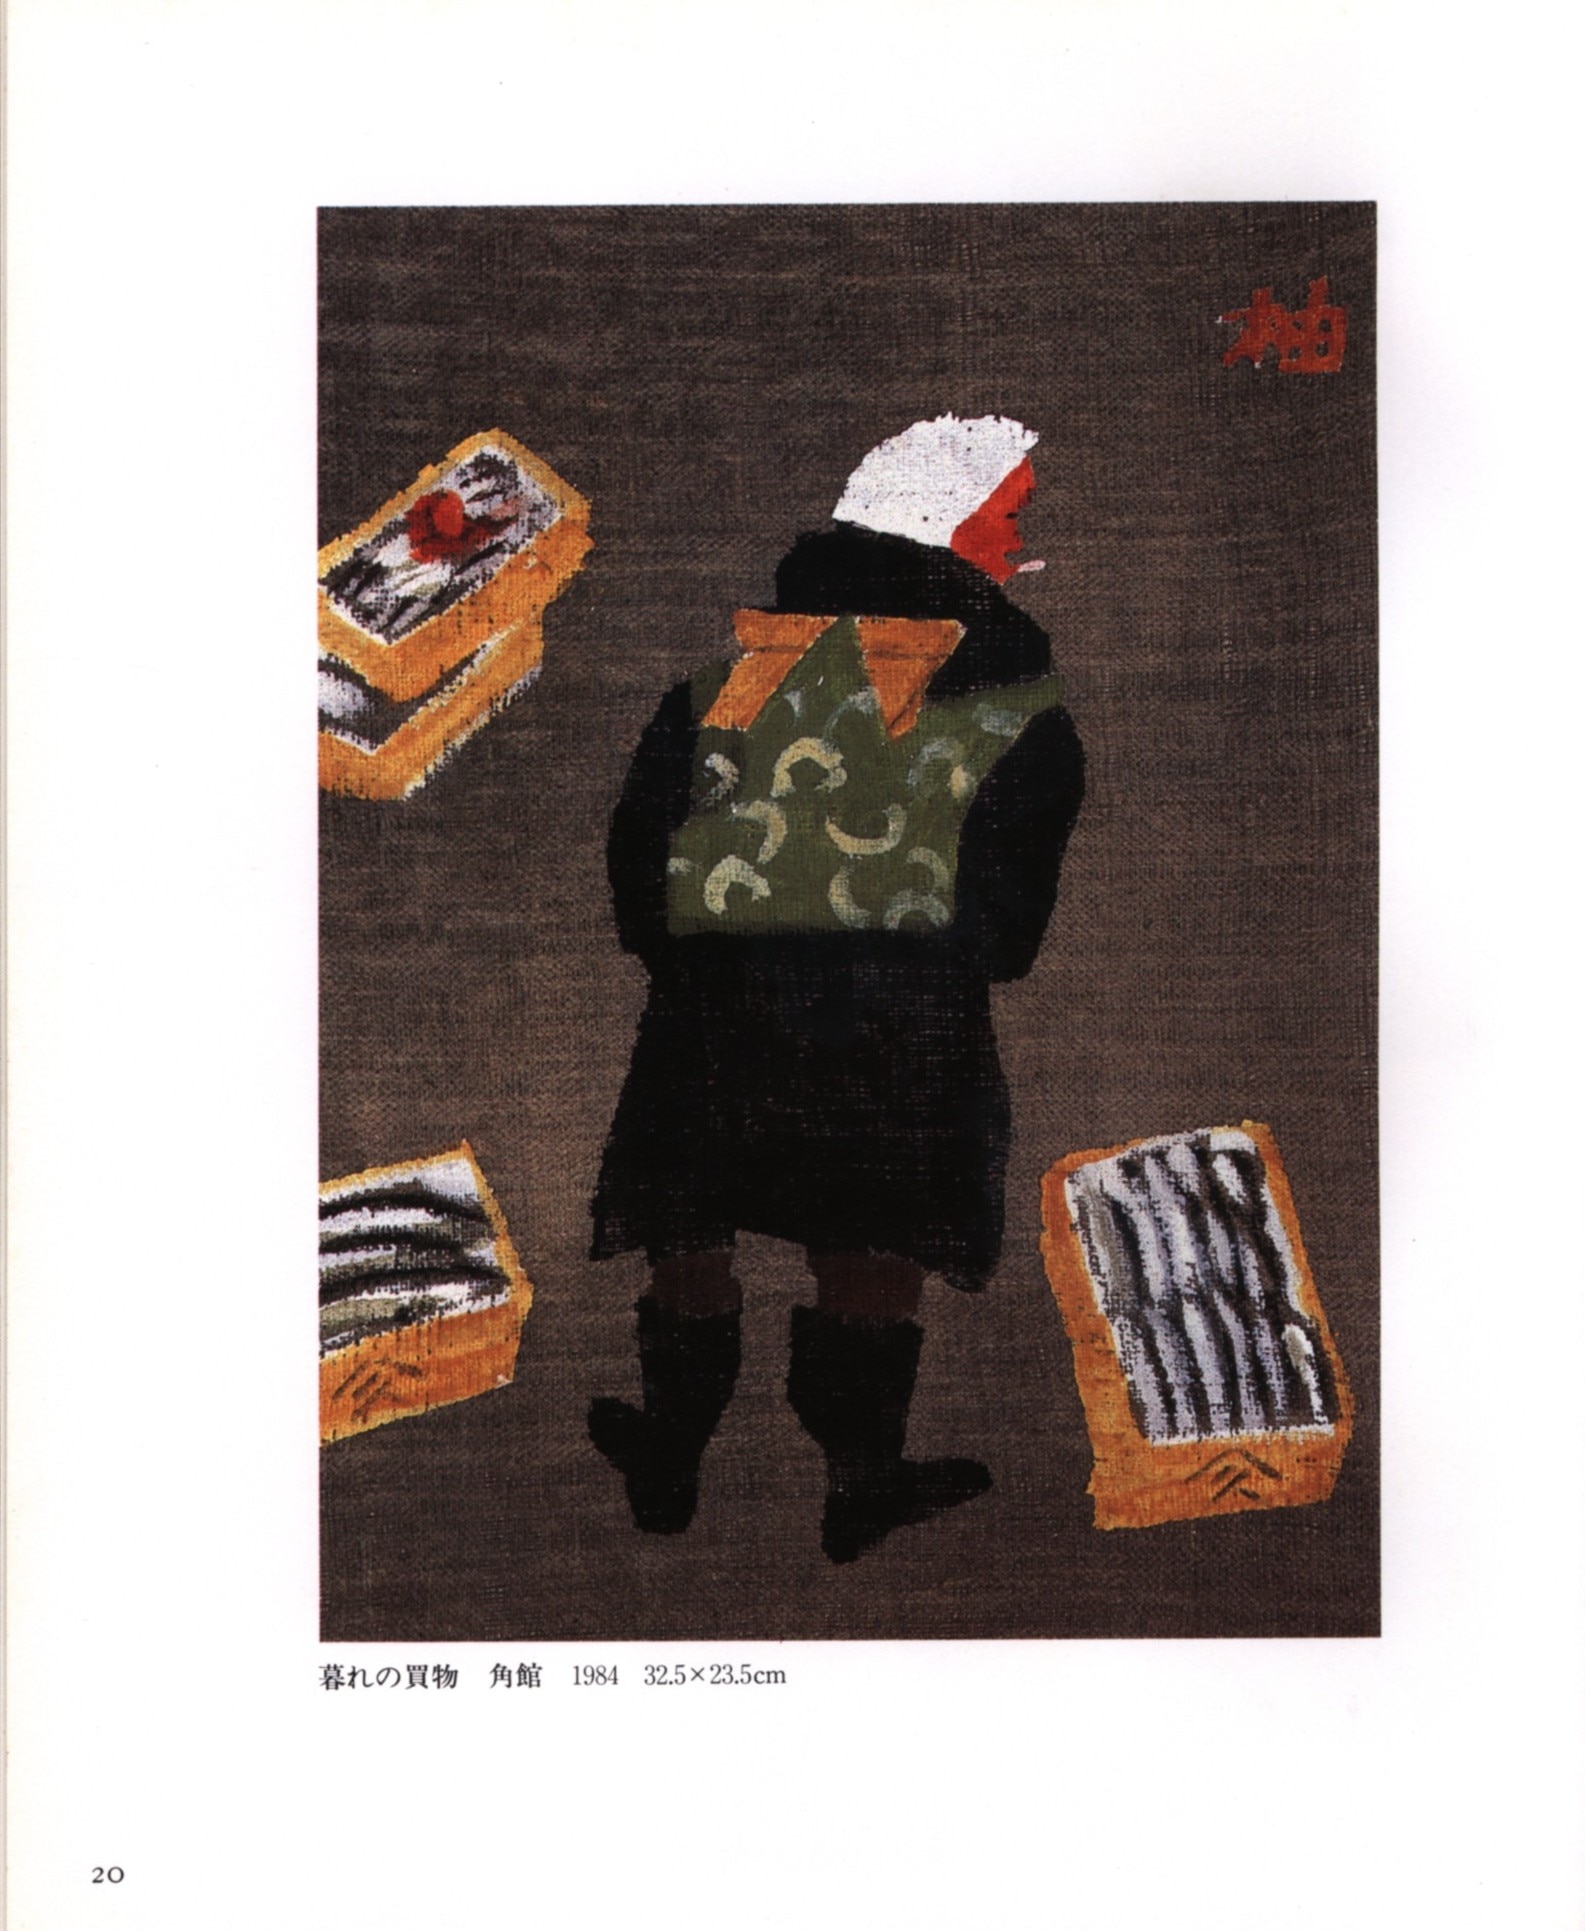 s 旅の歓び/柚木沙弥郎画集 用美社 1986年 - アート、エンターテインメント